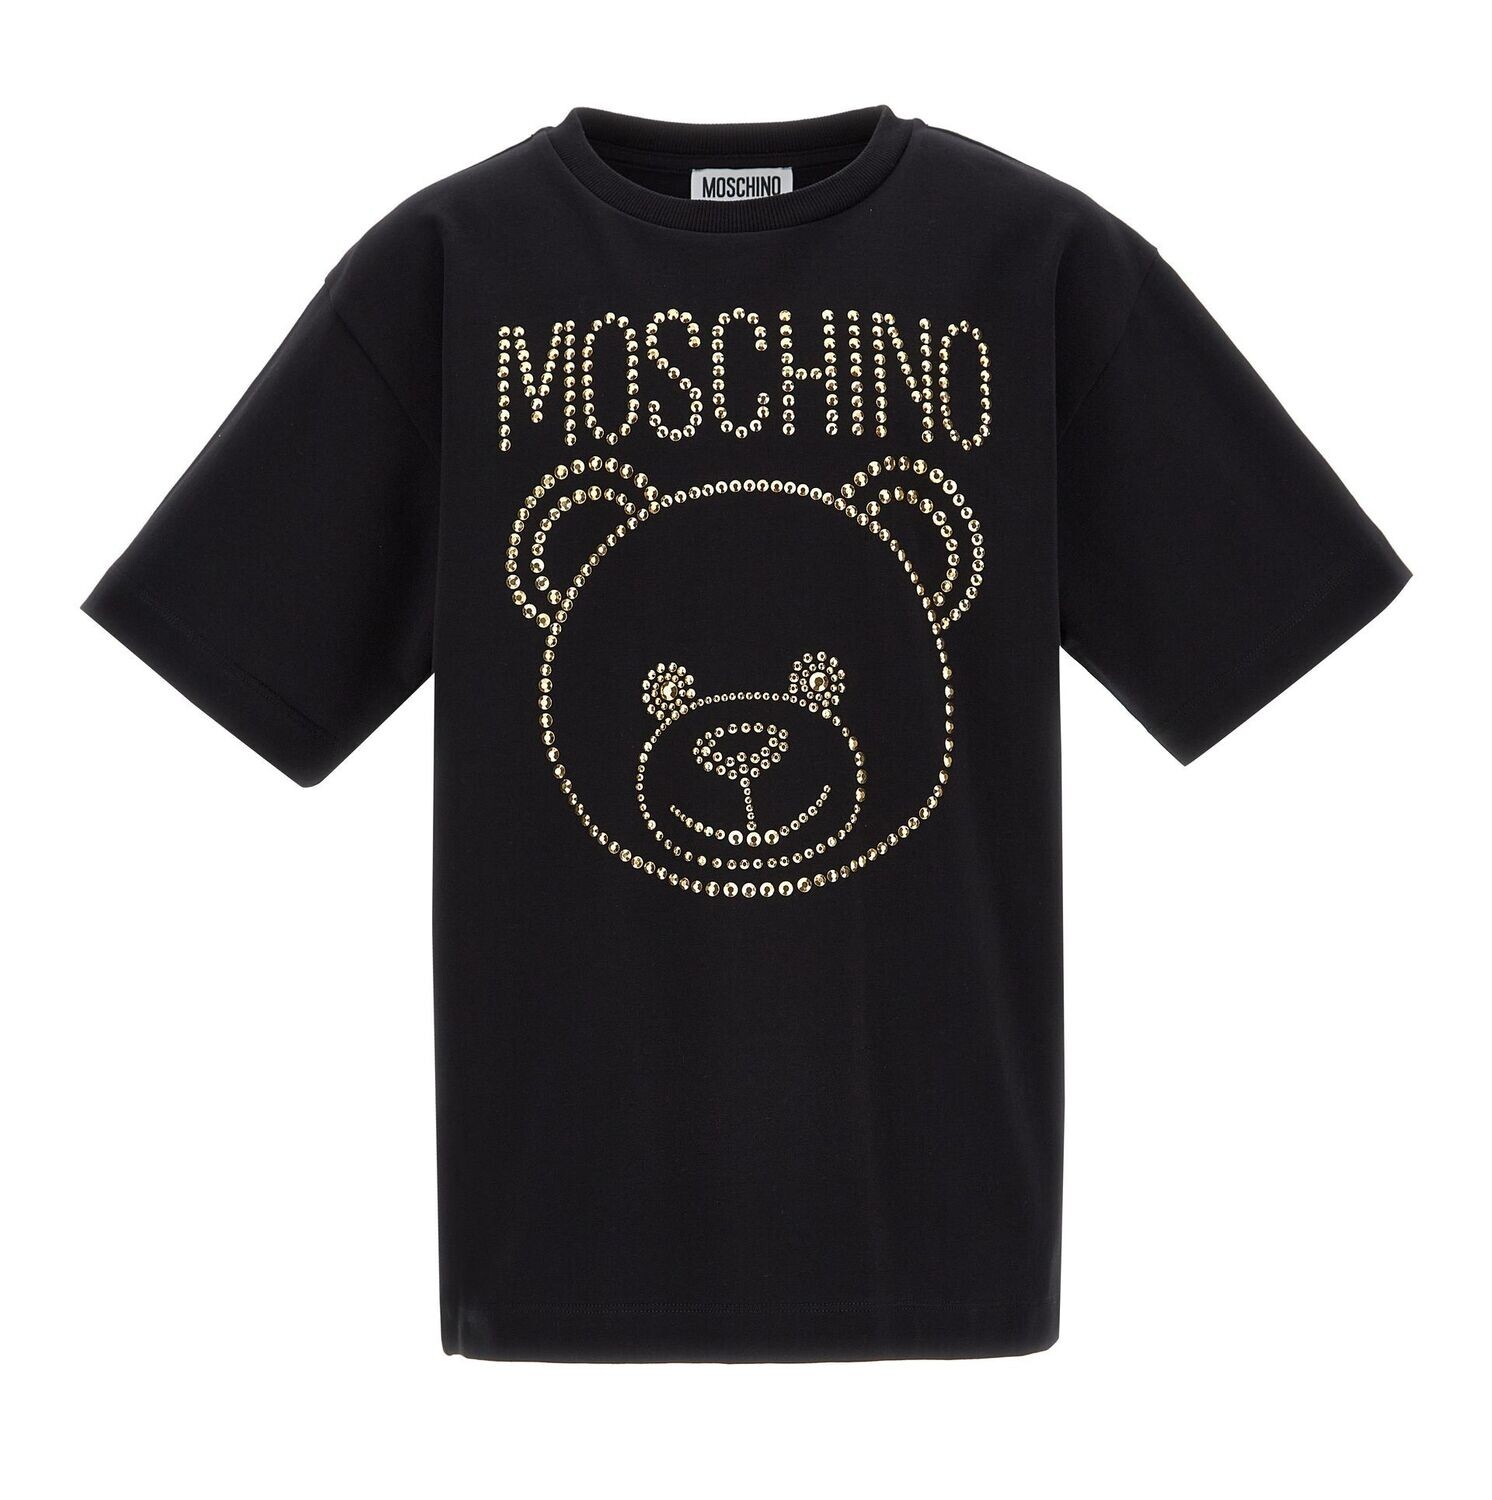 Moschino - T-shirt nero con borchie oro, Size: 10 anni